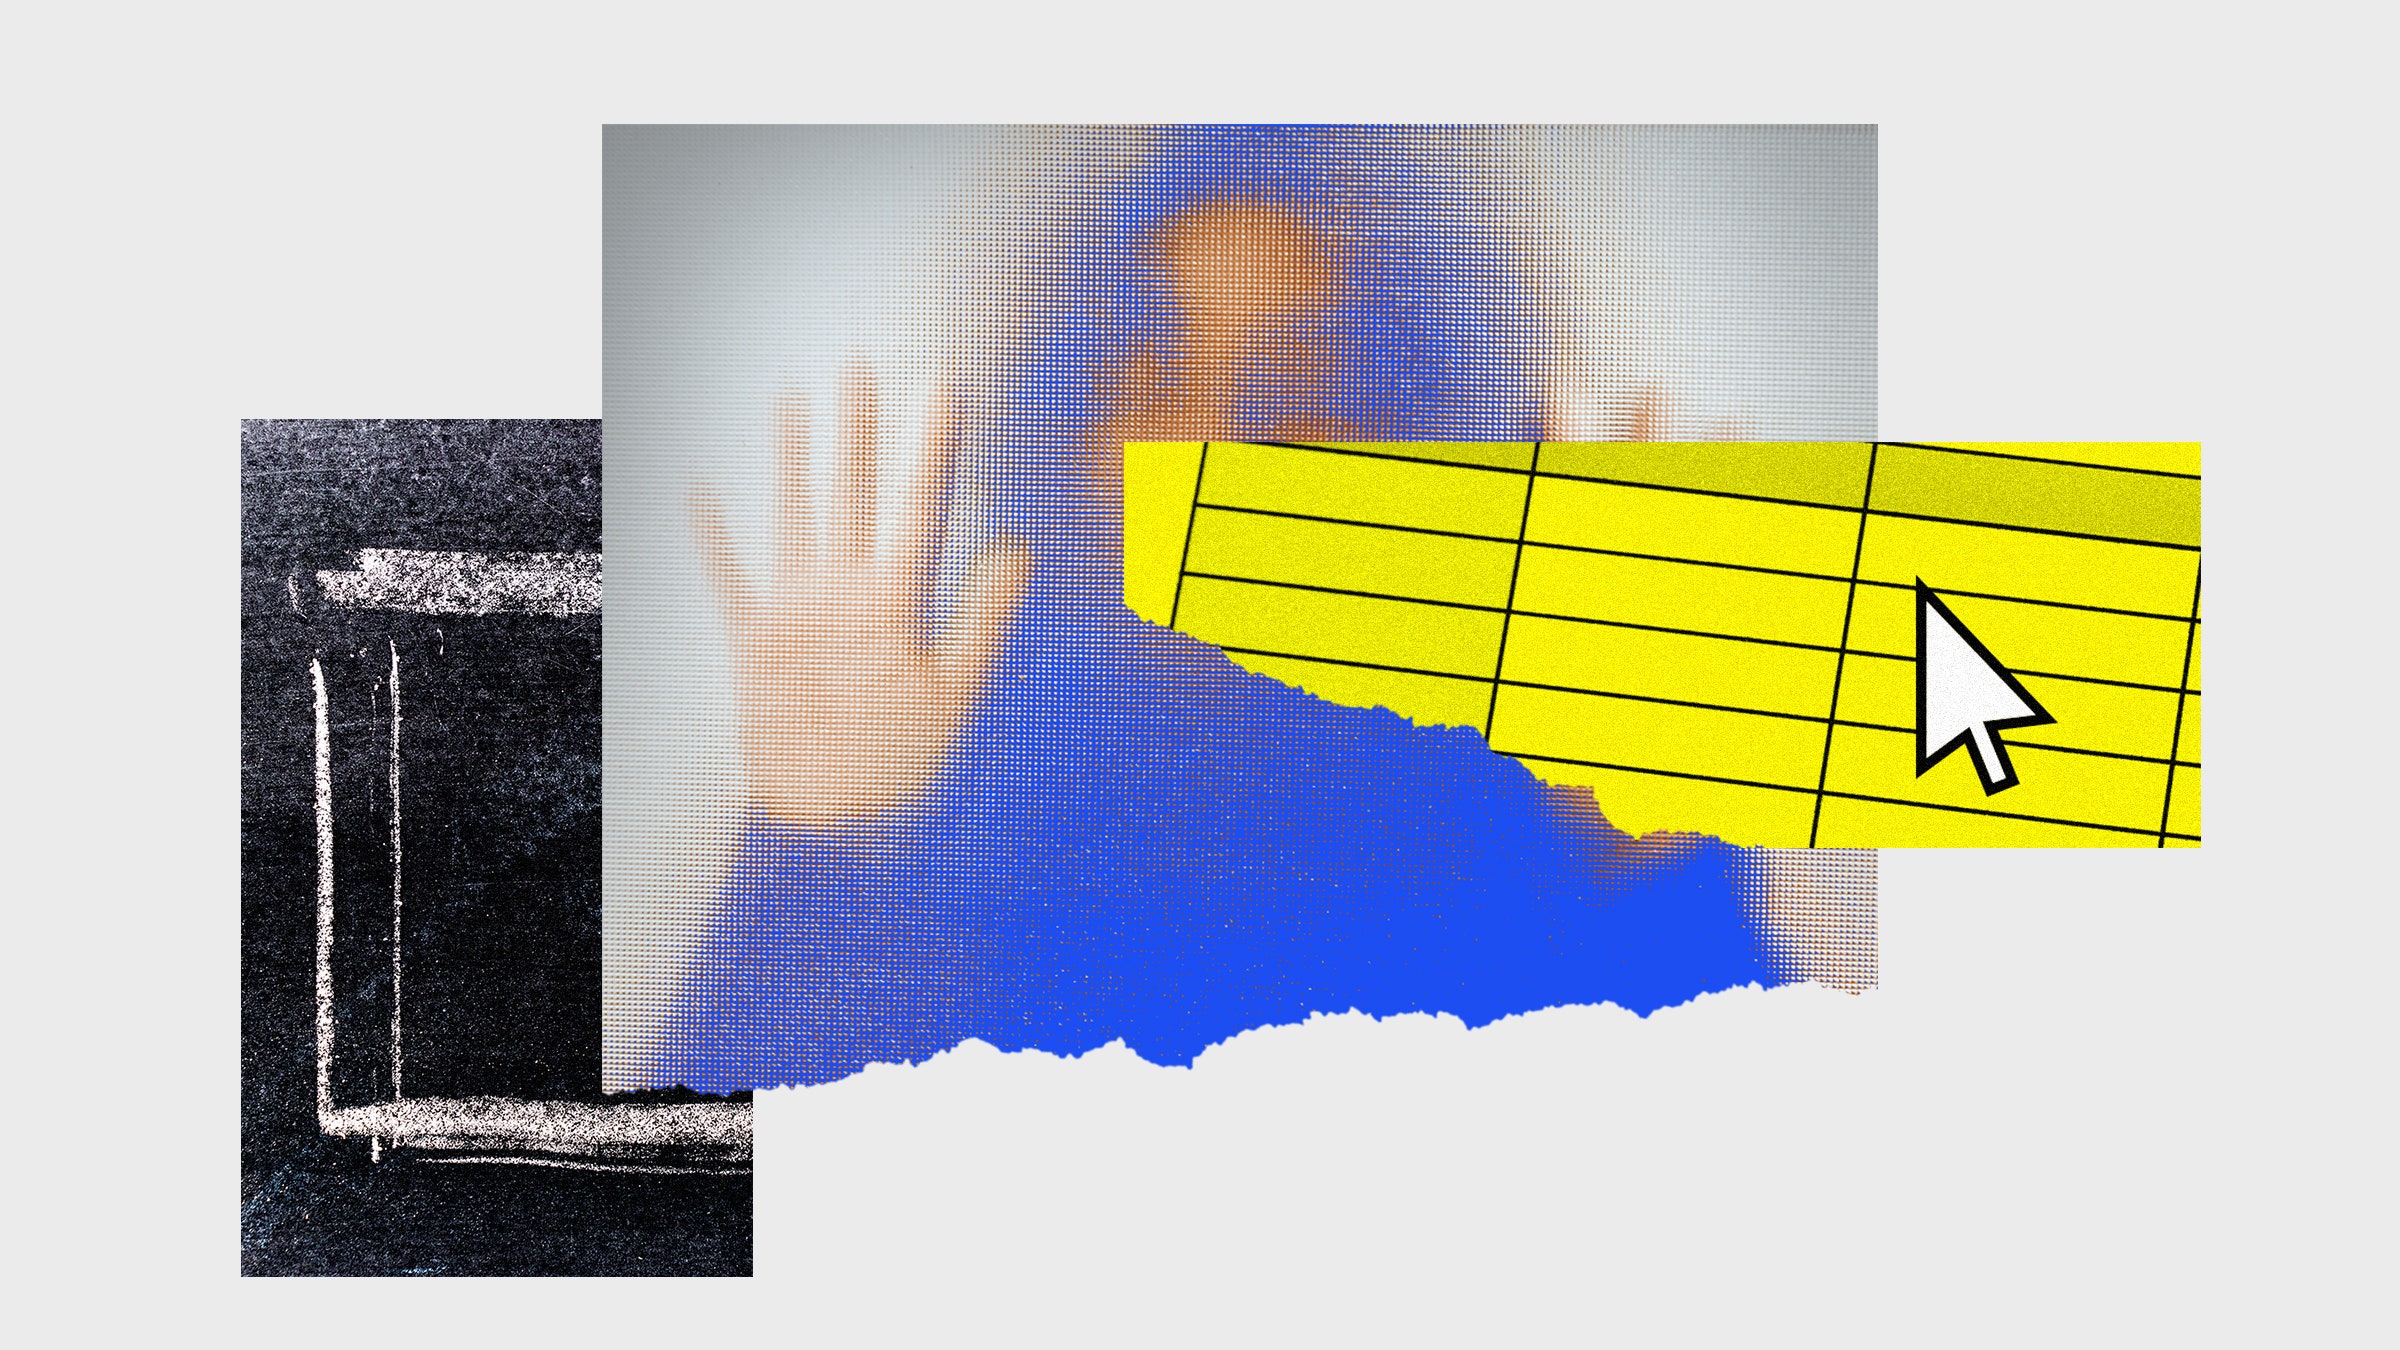 Colagem de fotos mostrando uma planilha, uma pessoa atrás de um vidro translúcido e um quadrado em um quadro de giz